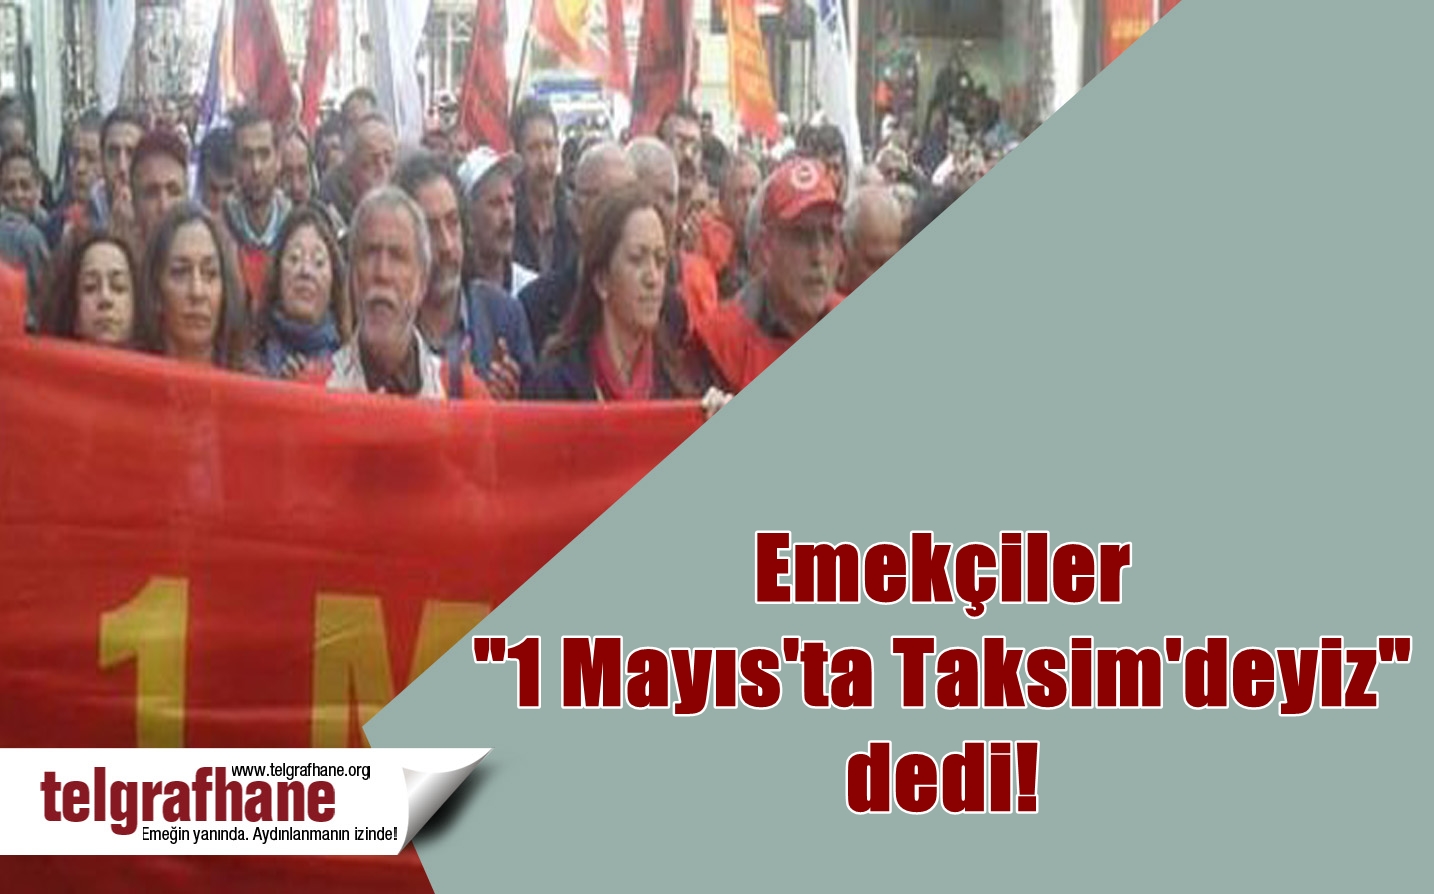 Emekçiler “1 Mayıs’ta Taksim’deyiz” dedi!